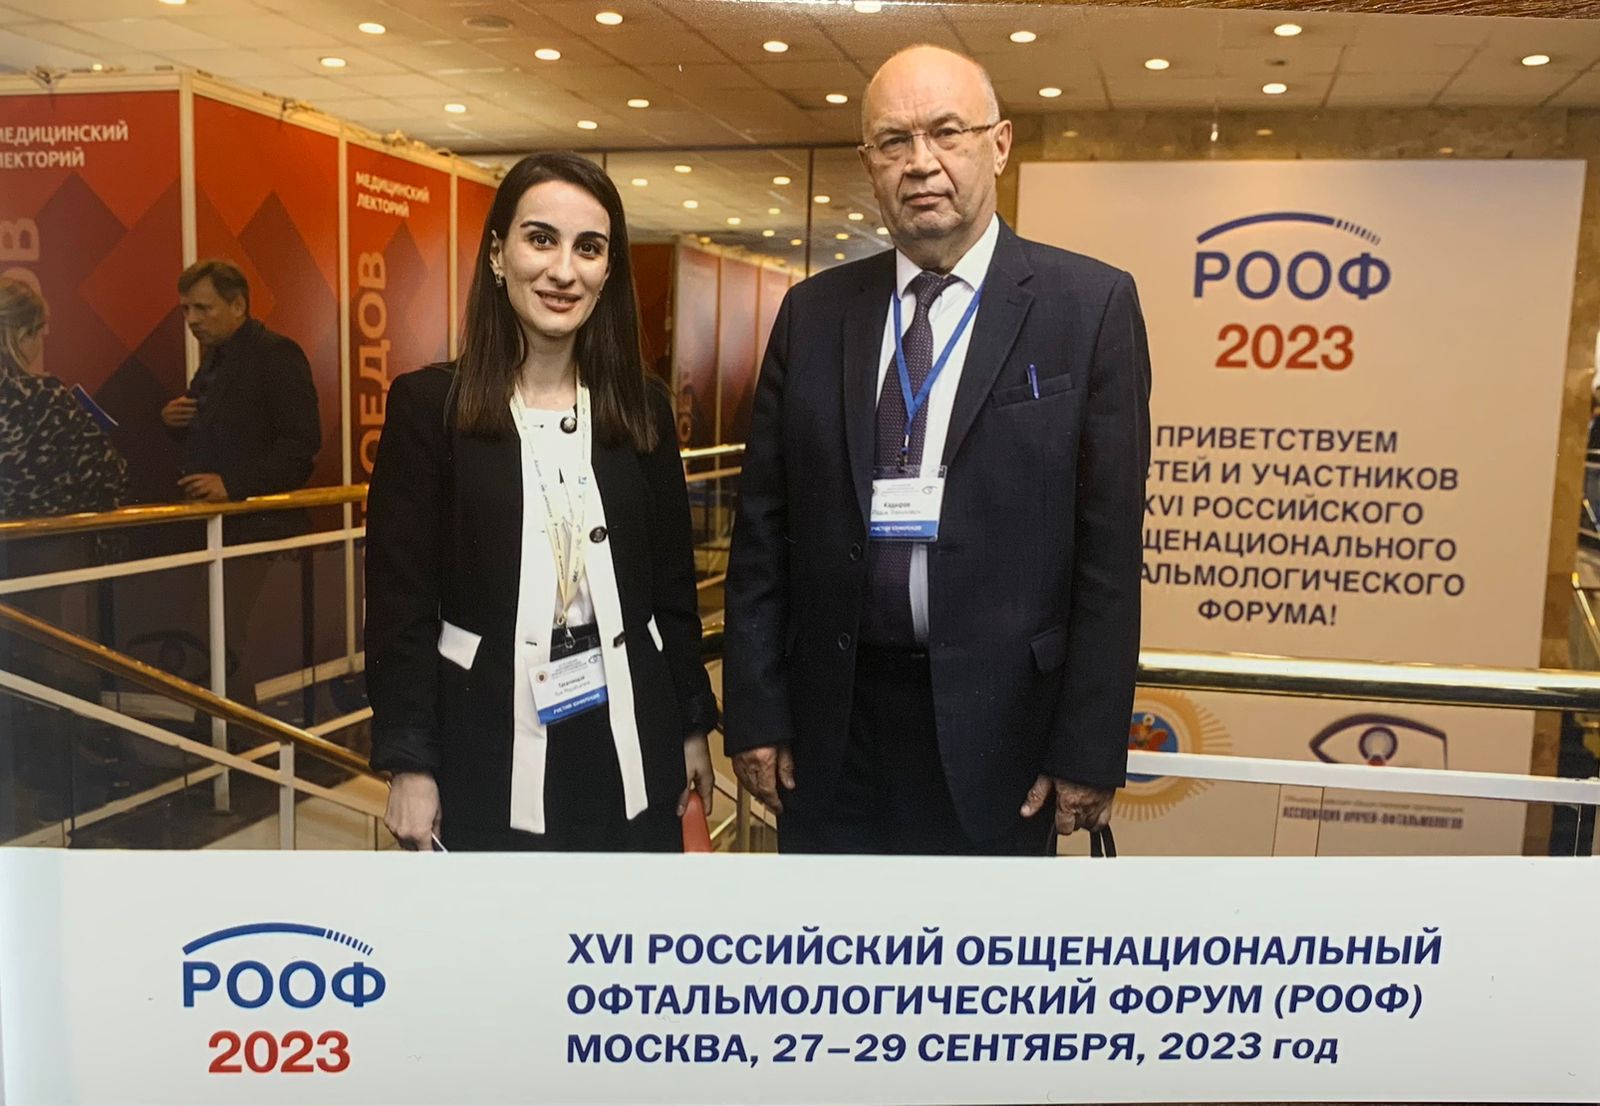 Российский общенациональный офтальмологический форум (РООФ 2023)